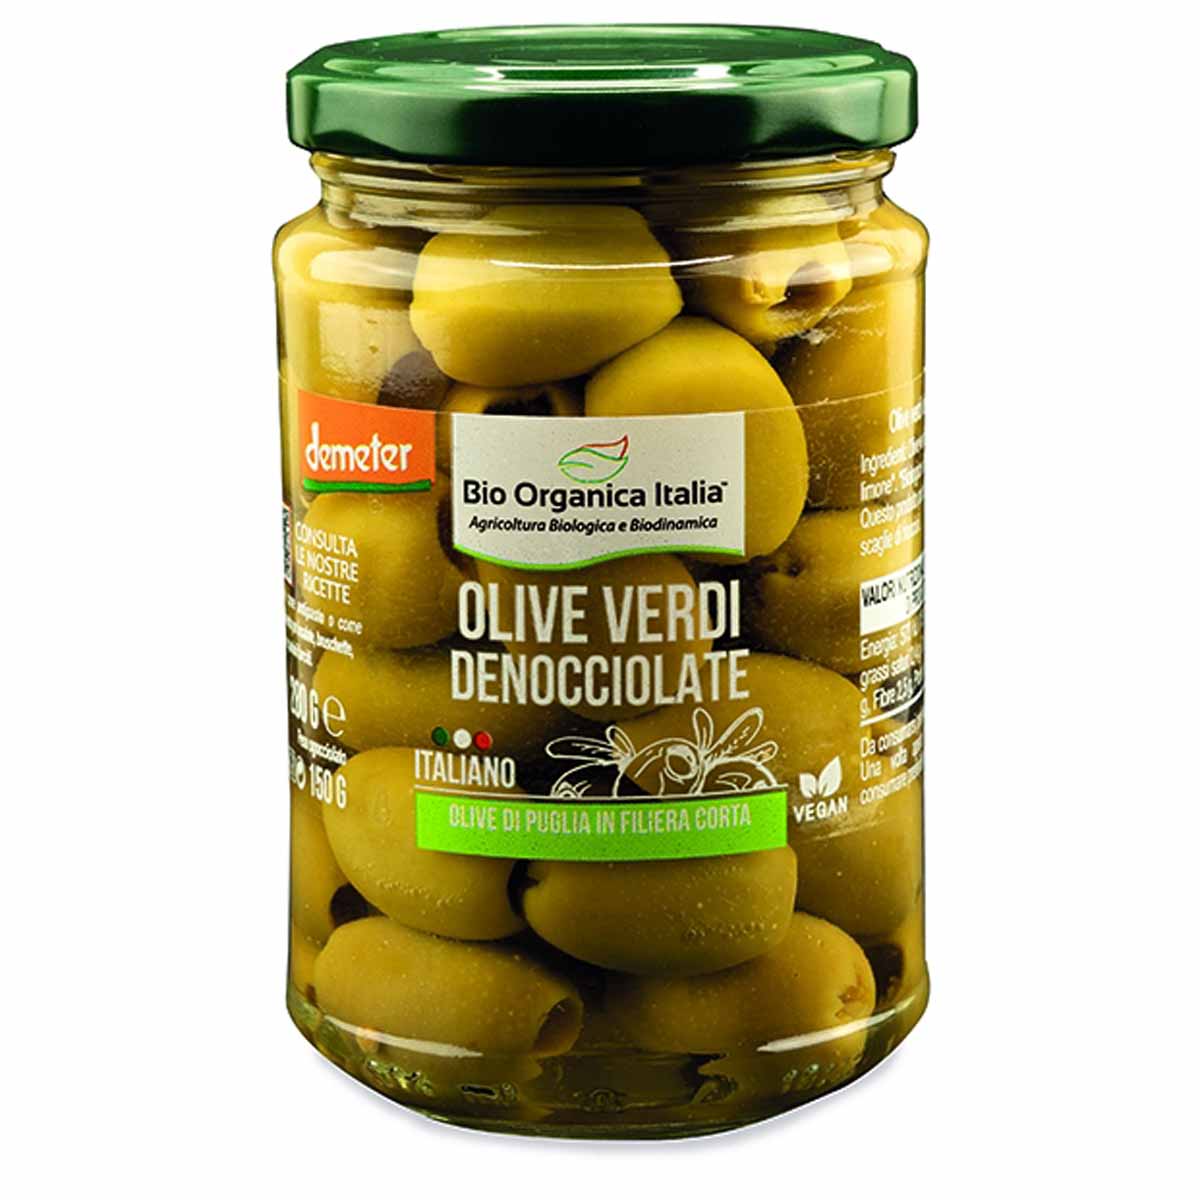 Bio Organica Italia Olive verdi denocciolate in salamoia